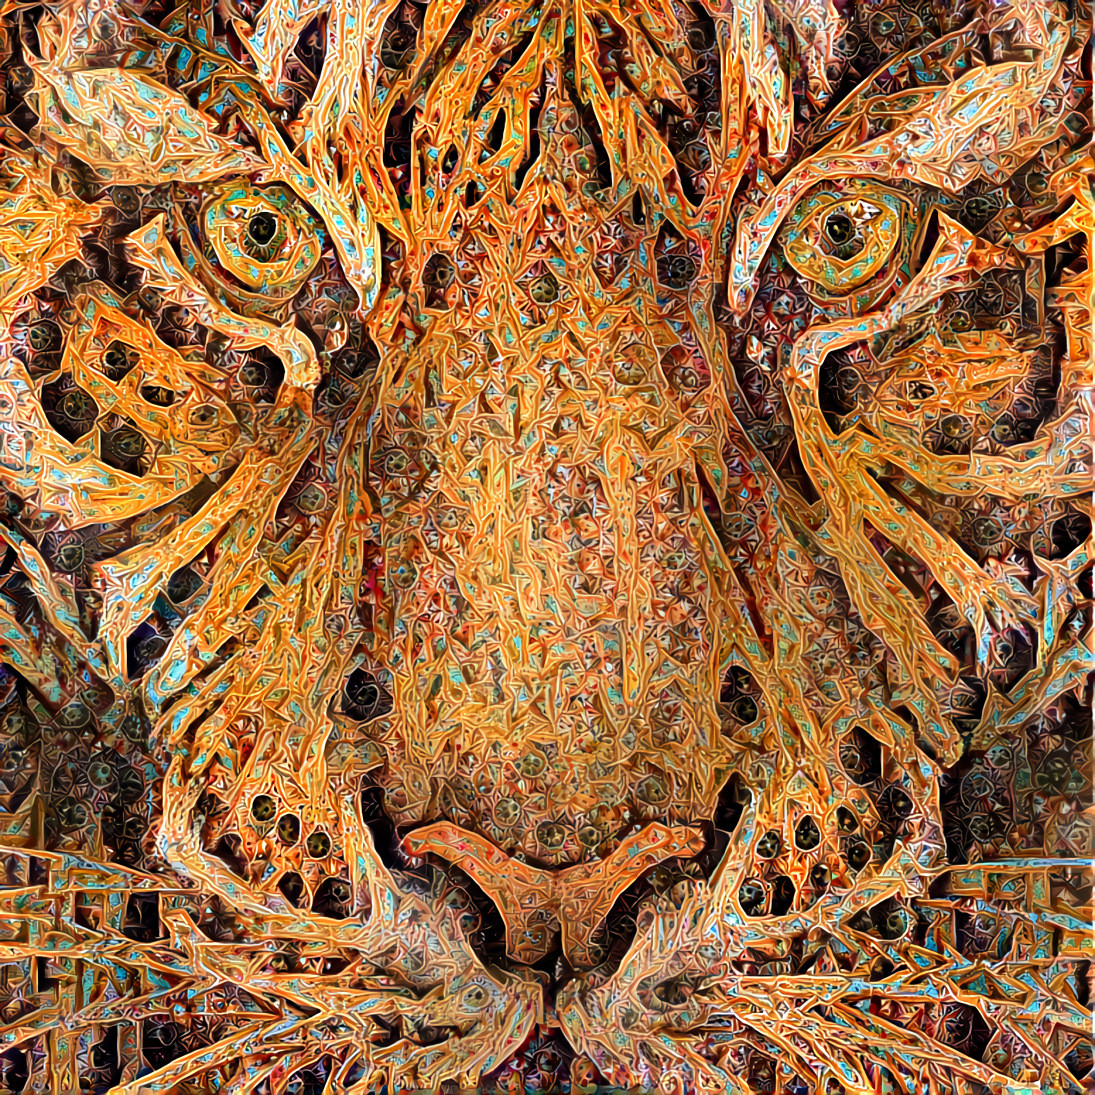 Colorful Tiger [1.2MP]